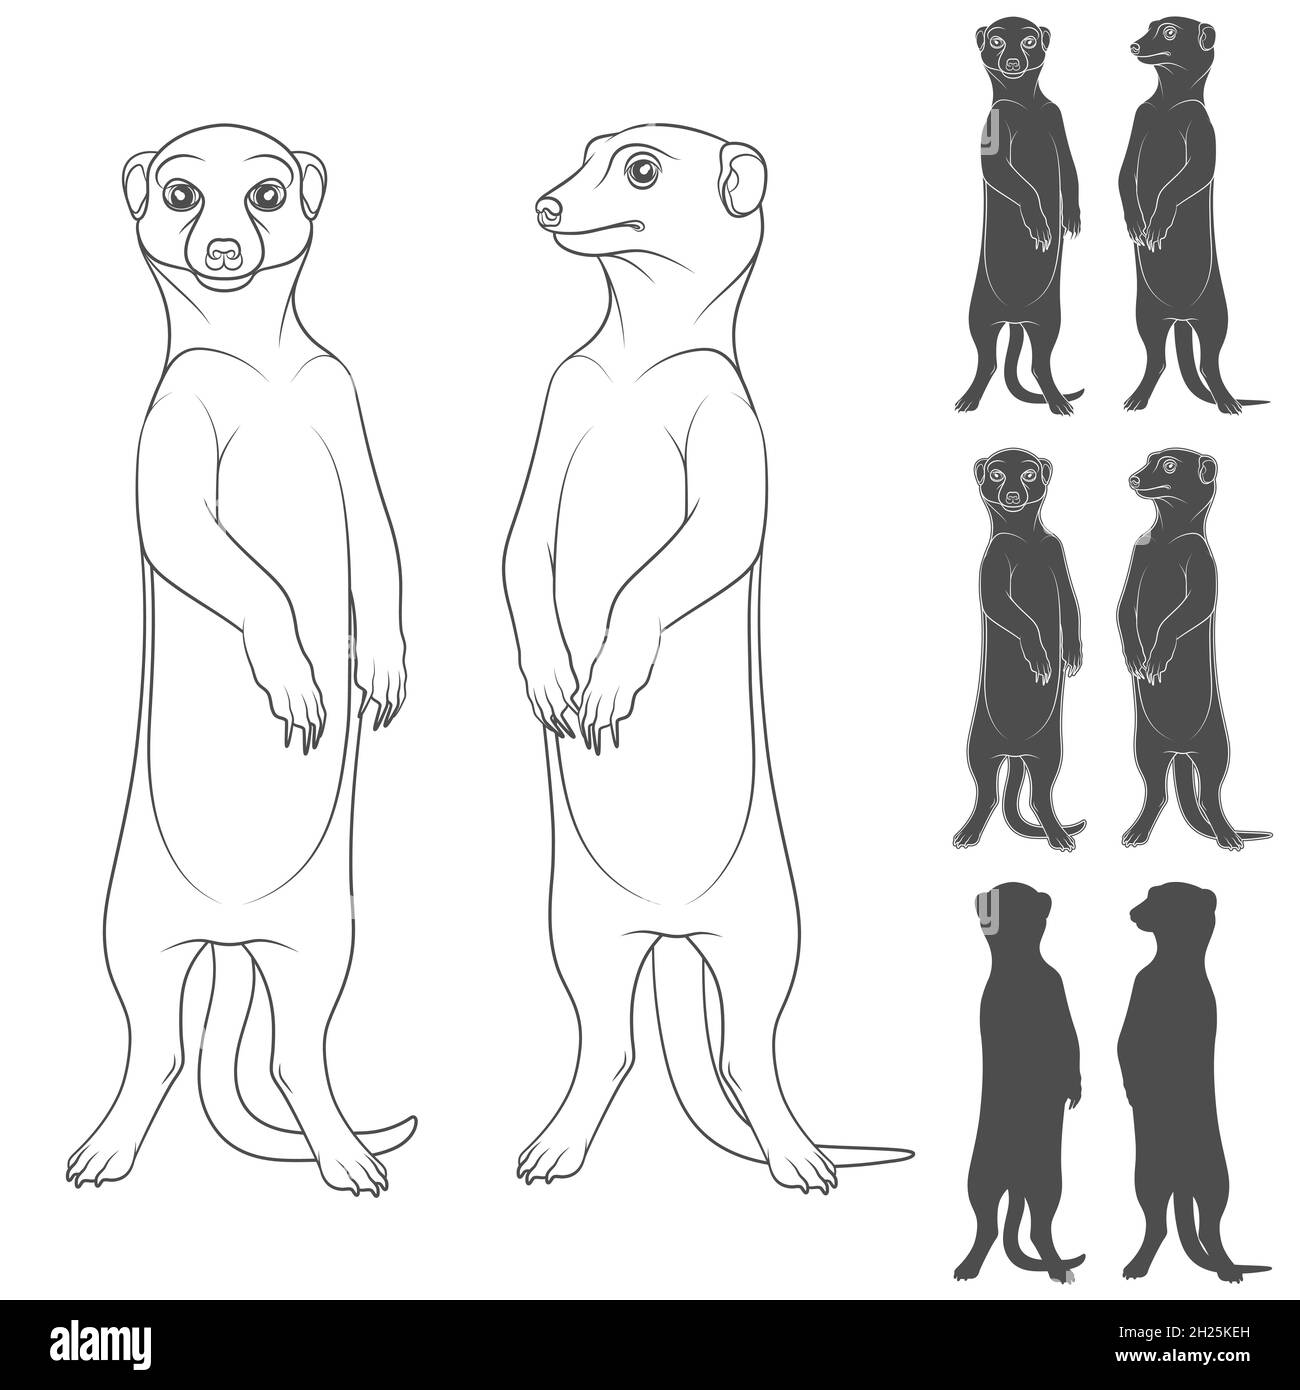 Ensemble d'illustrations en noir et blanc représentant les meerkats.Objets vectoriels isolés sur fond blanc. Illustration de Vecteur